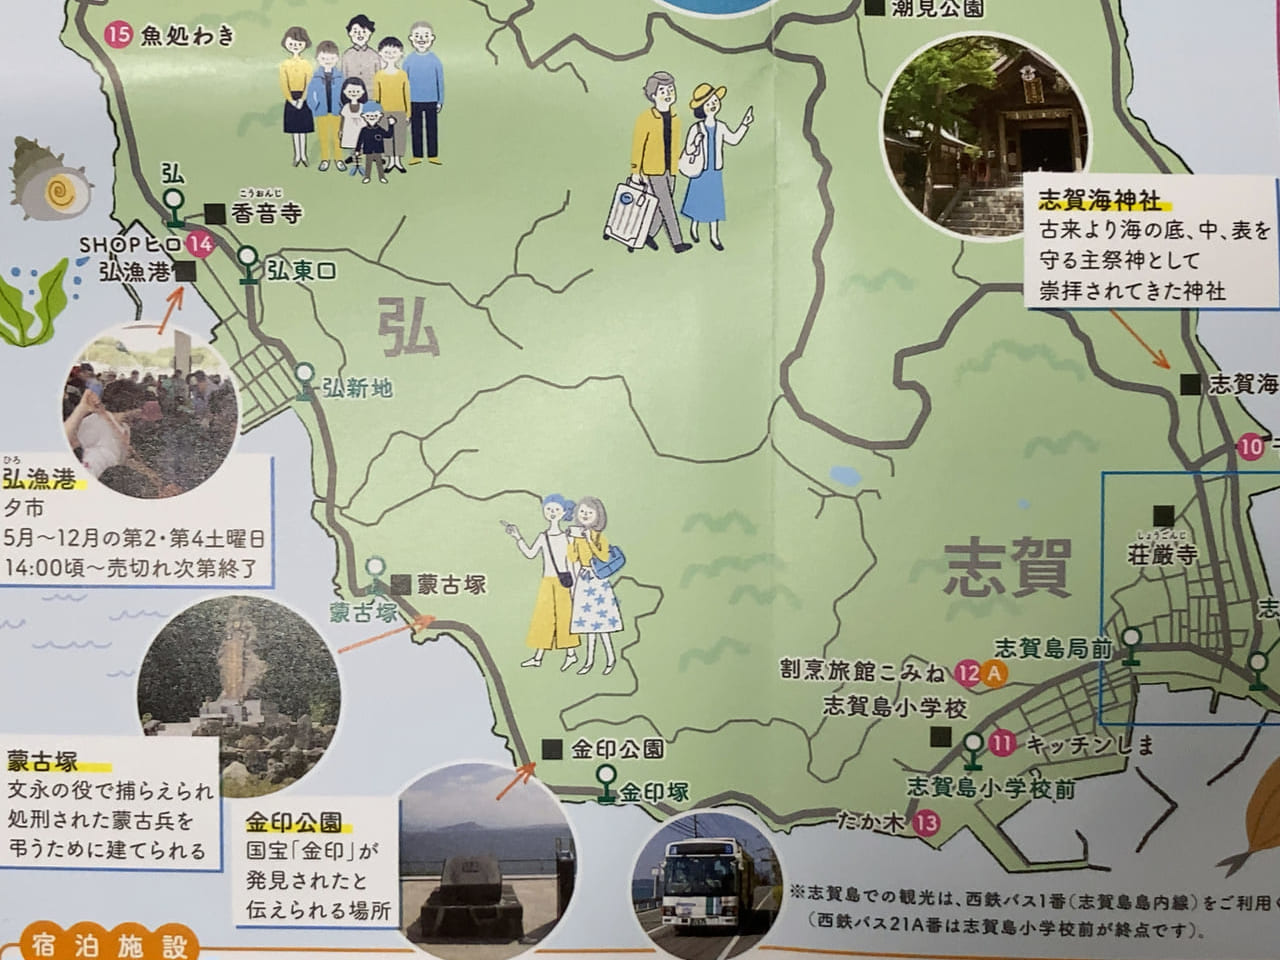 志賀島の弘漁港では、毎月開催している夕市を8月26日(土)に開催予定です。志賀島には、2023年5月にリニューアルオープンした志賀島休暇村内の「志賀島ビジターセンター」もあります。